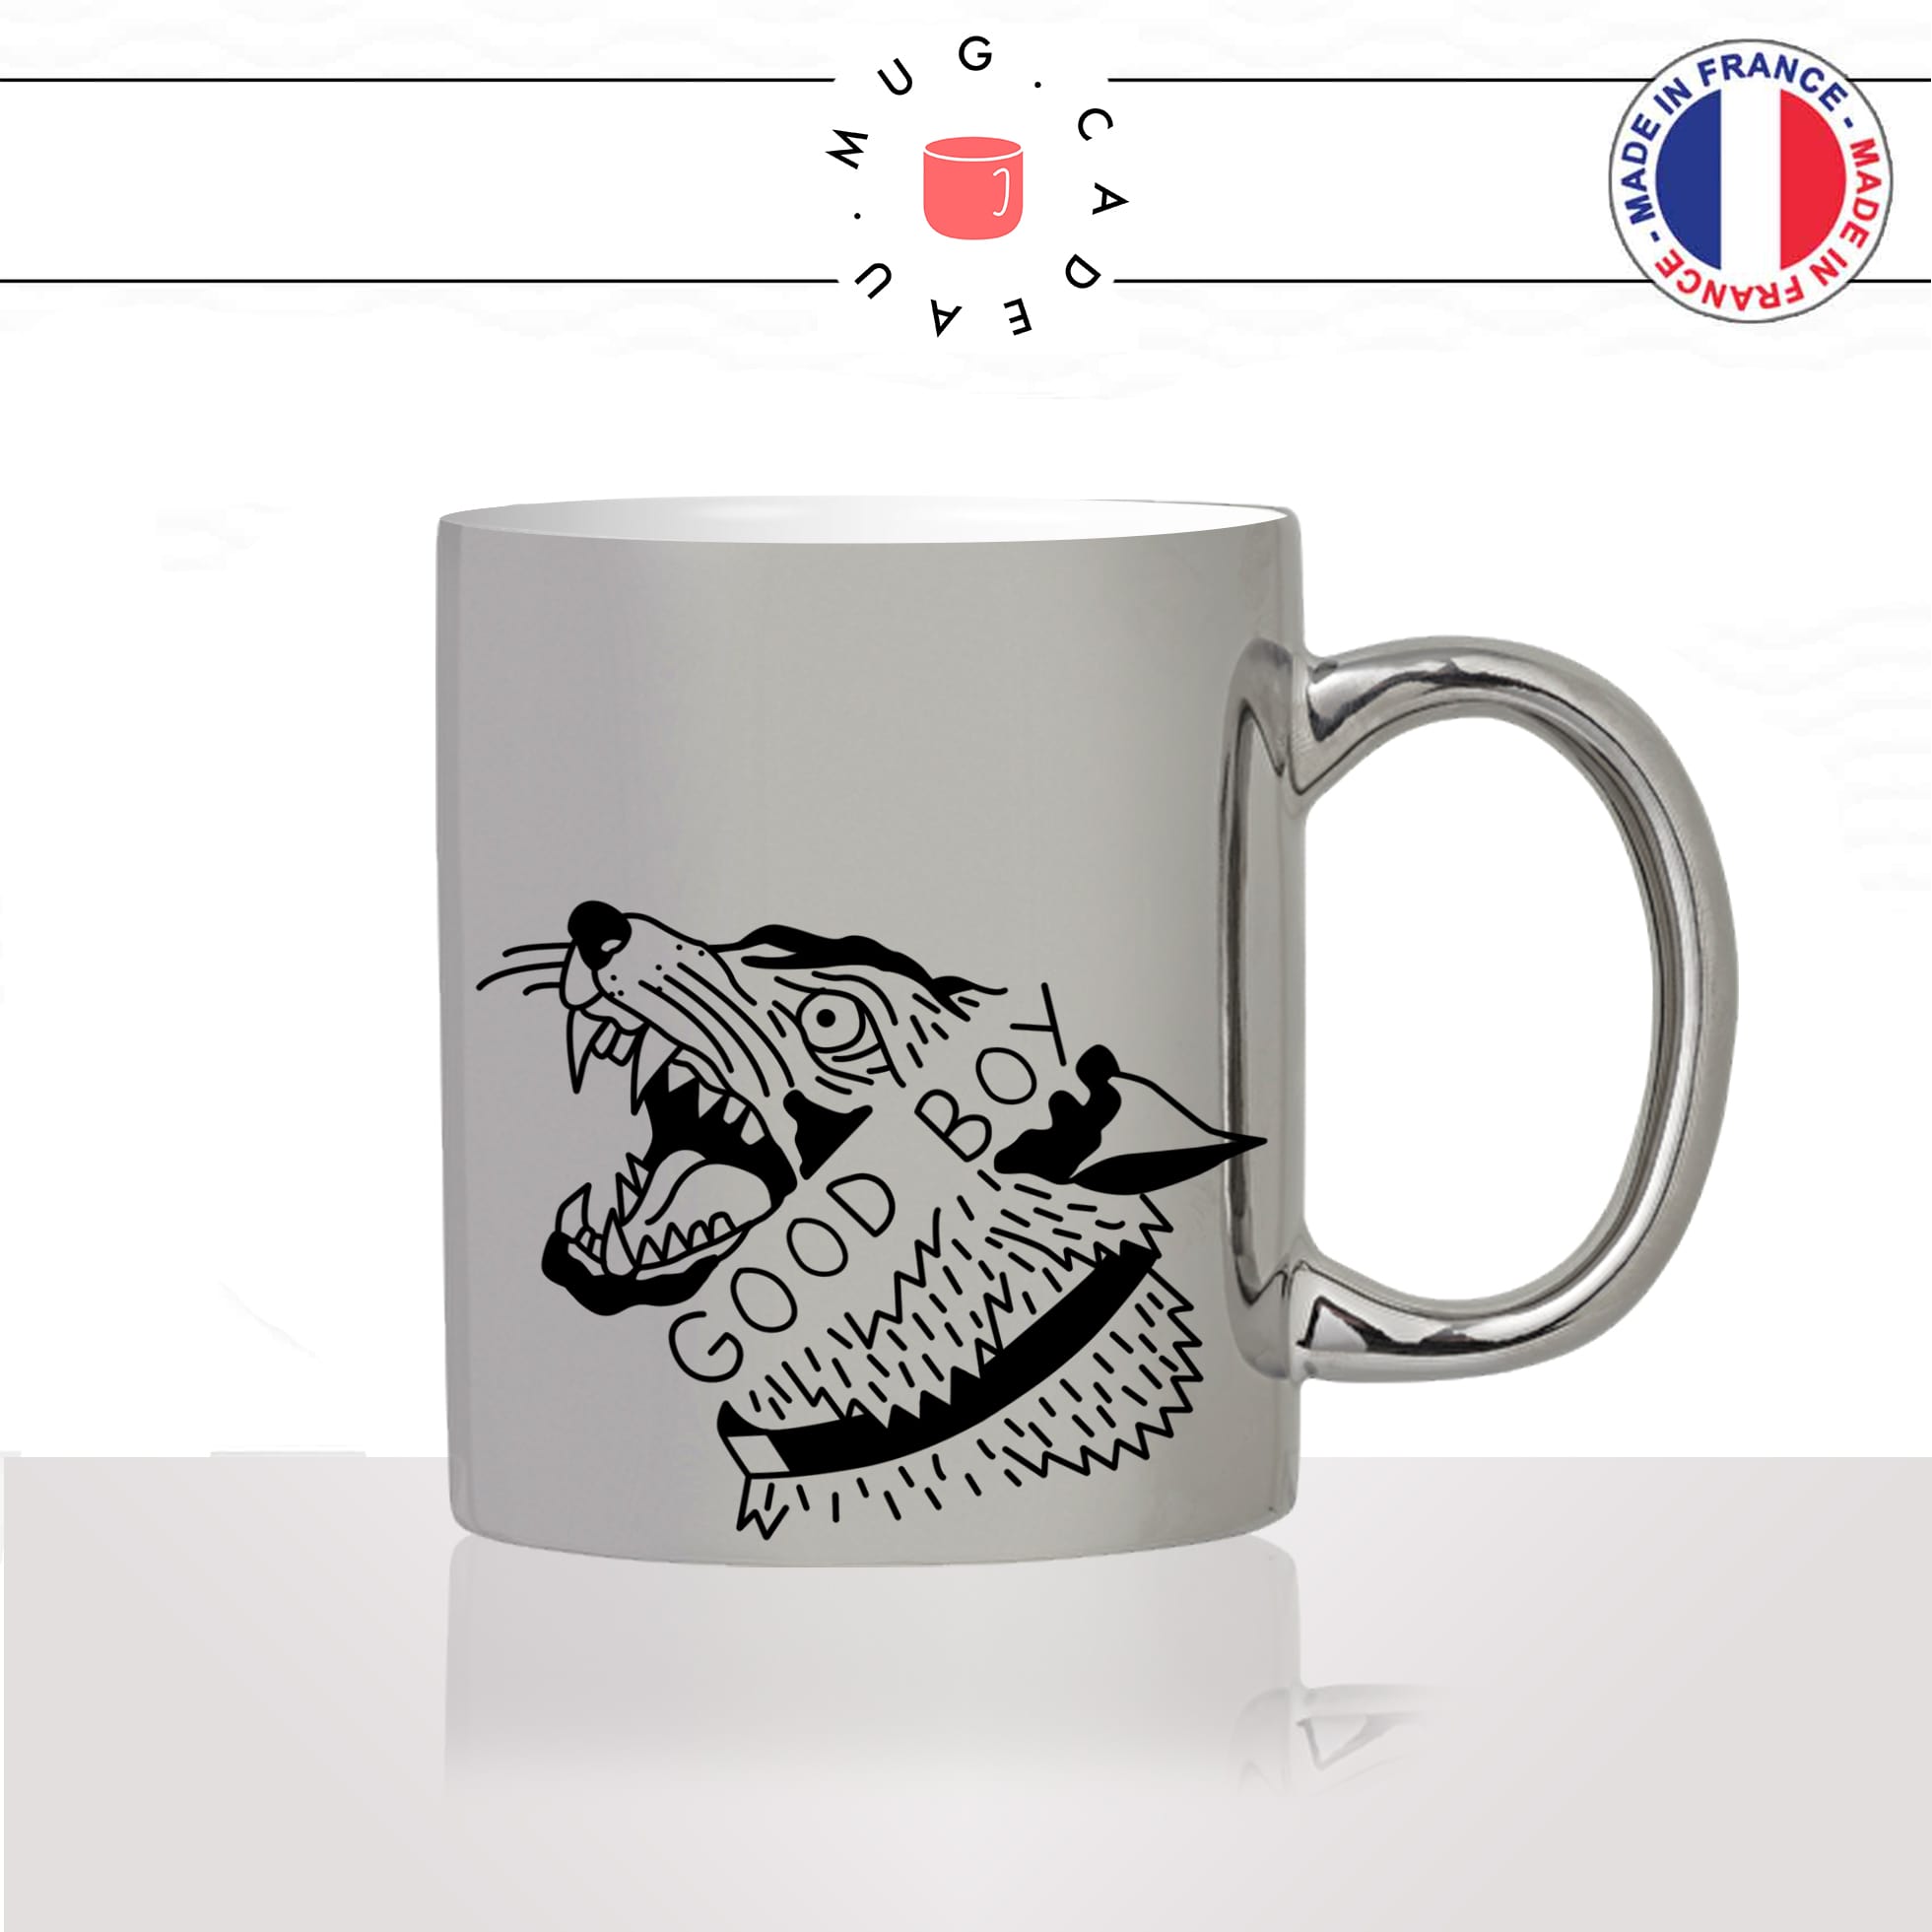 tasse-mug-argenté-silver-dog-good-boy-méchant-loup-chien-amour-mignon-animal-chiot-noir-fun-café-thé-idée-cadeau-original-personnalisé2-min